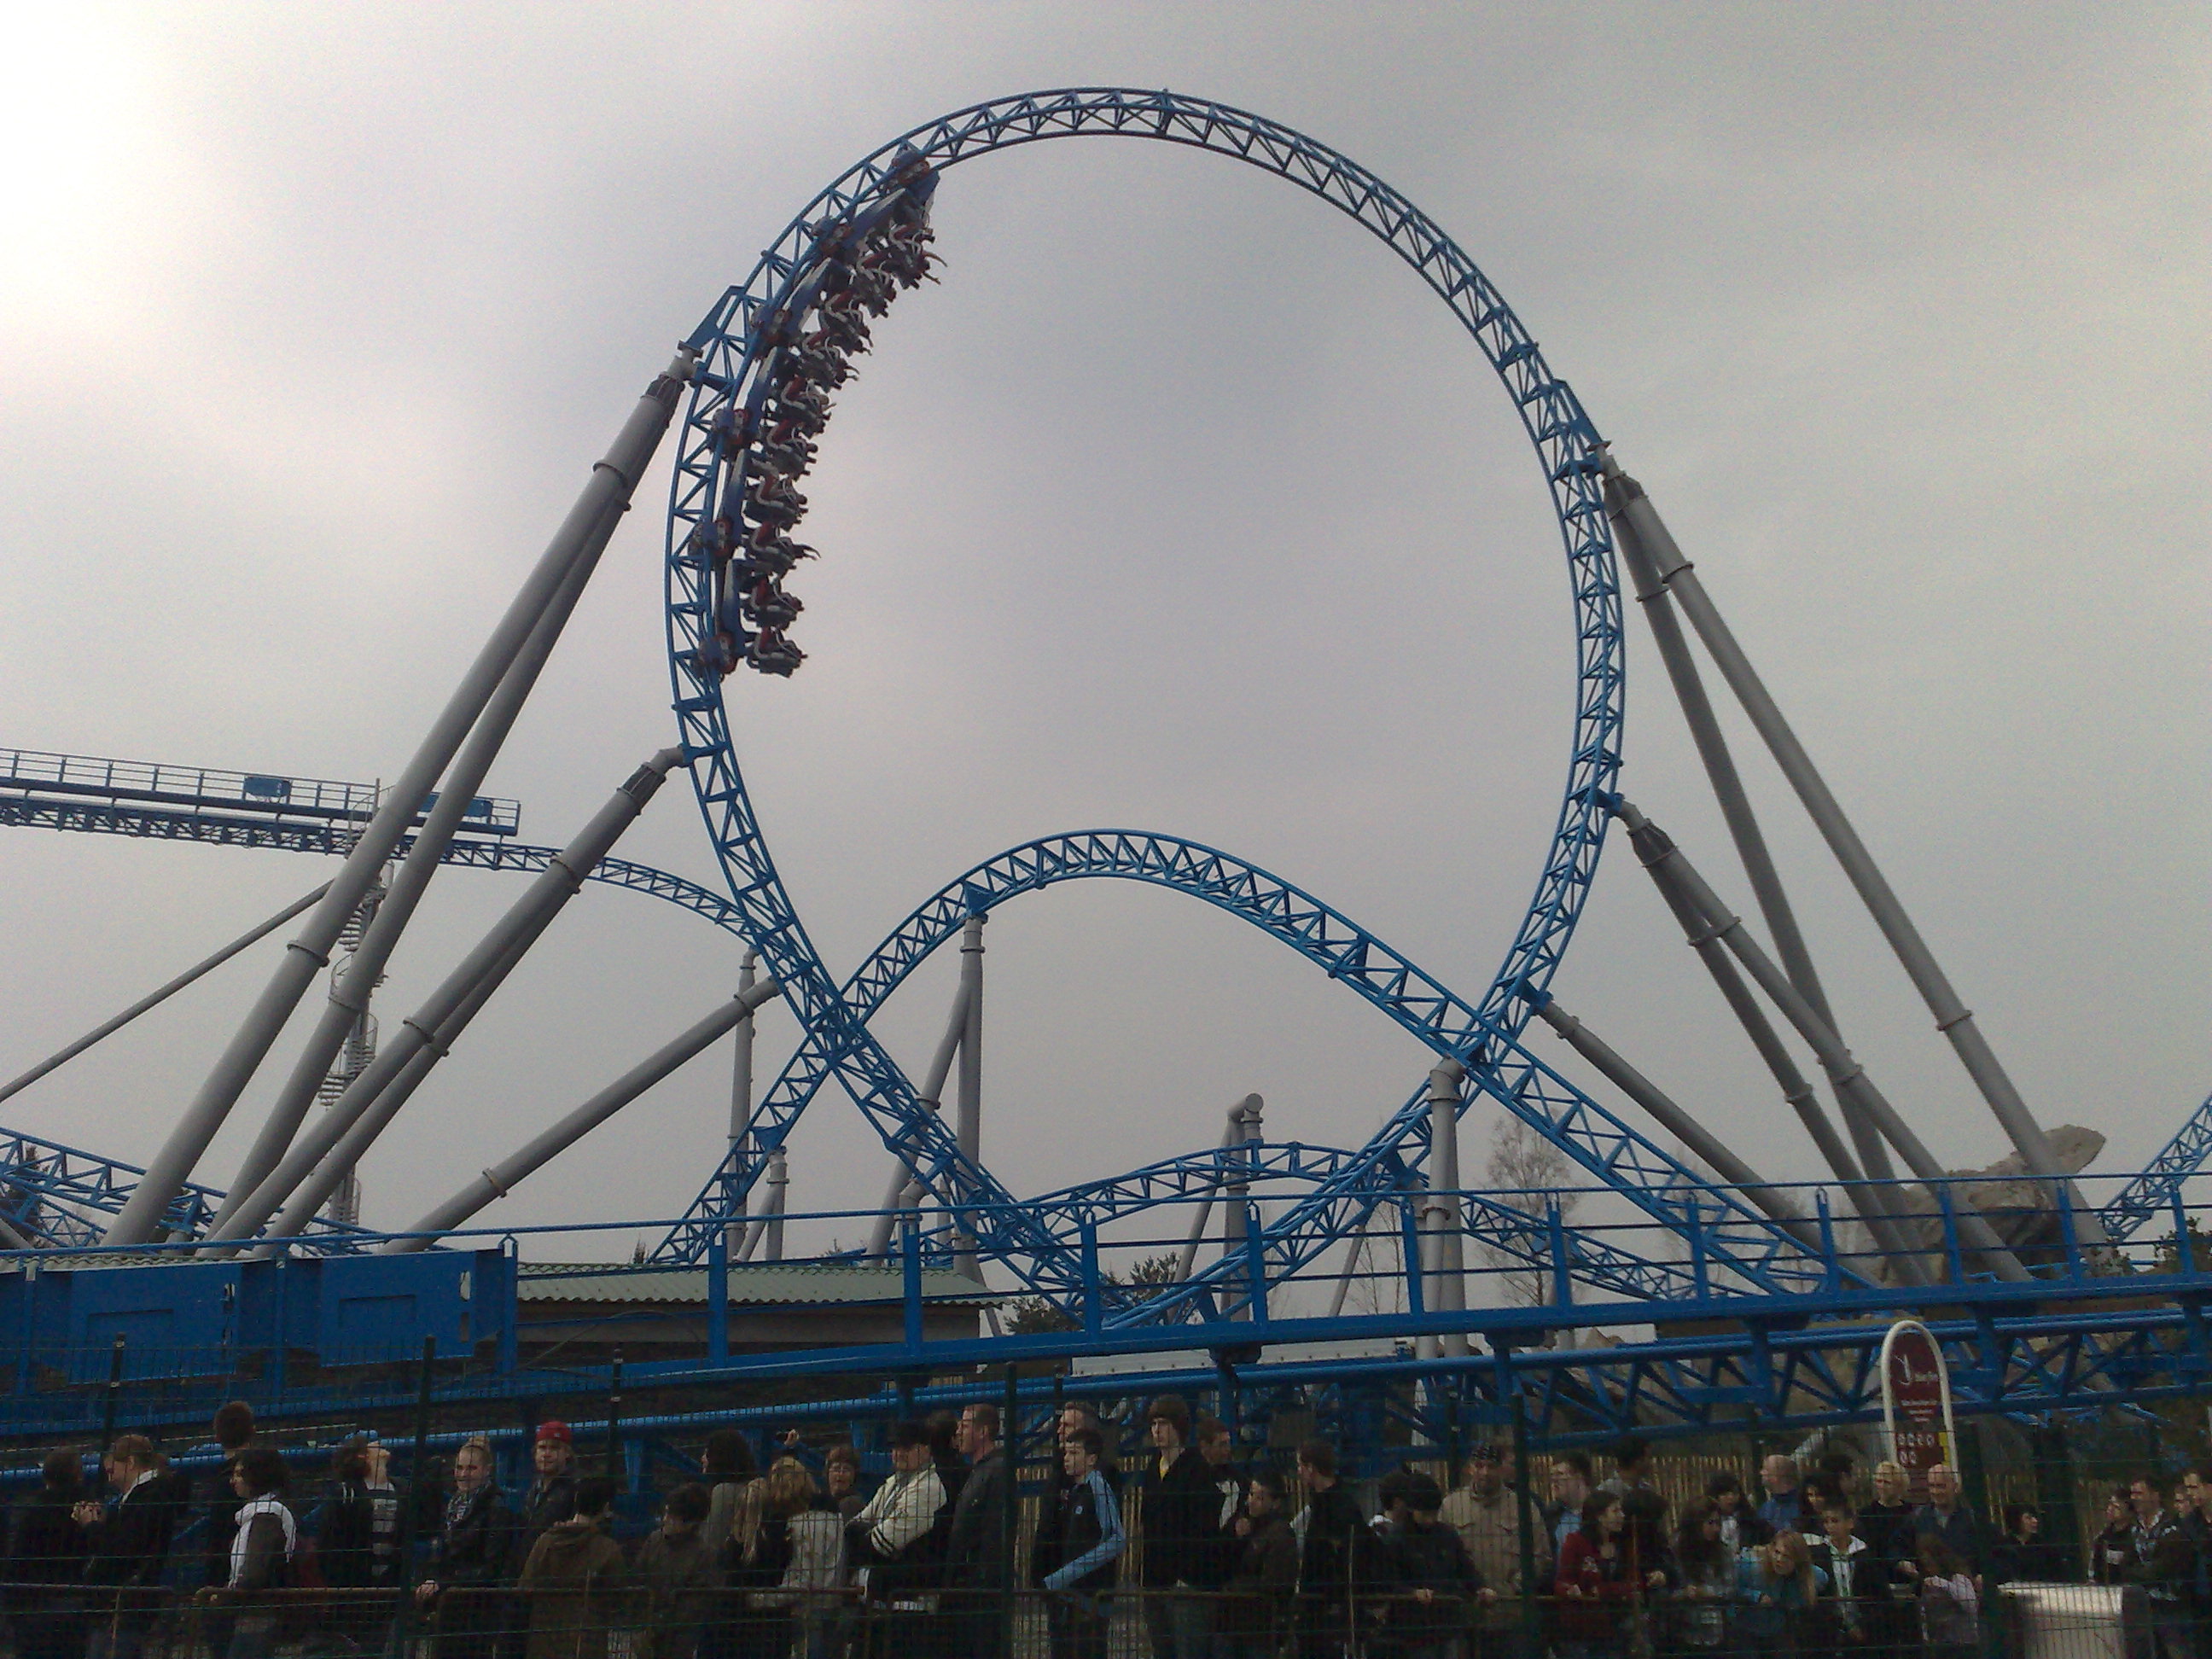 Blue Fire roller coaster